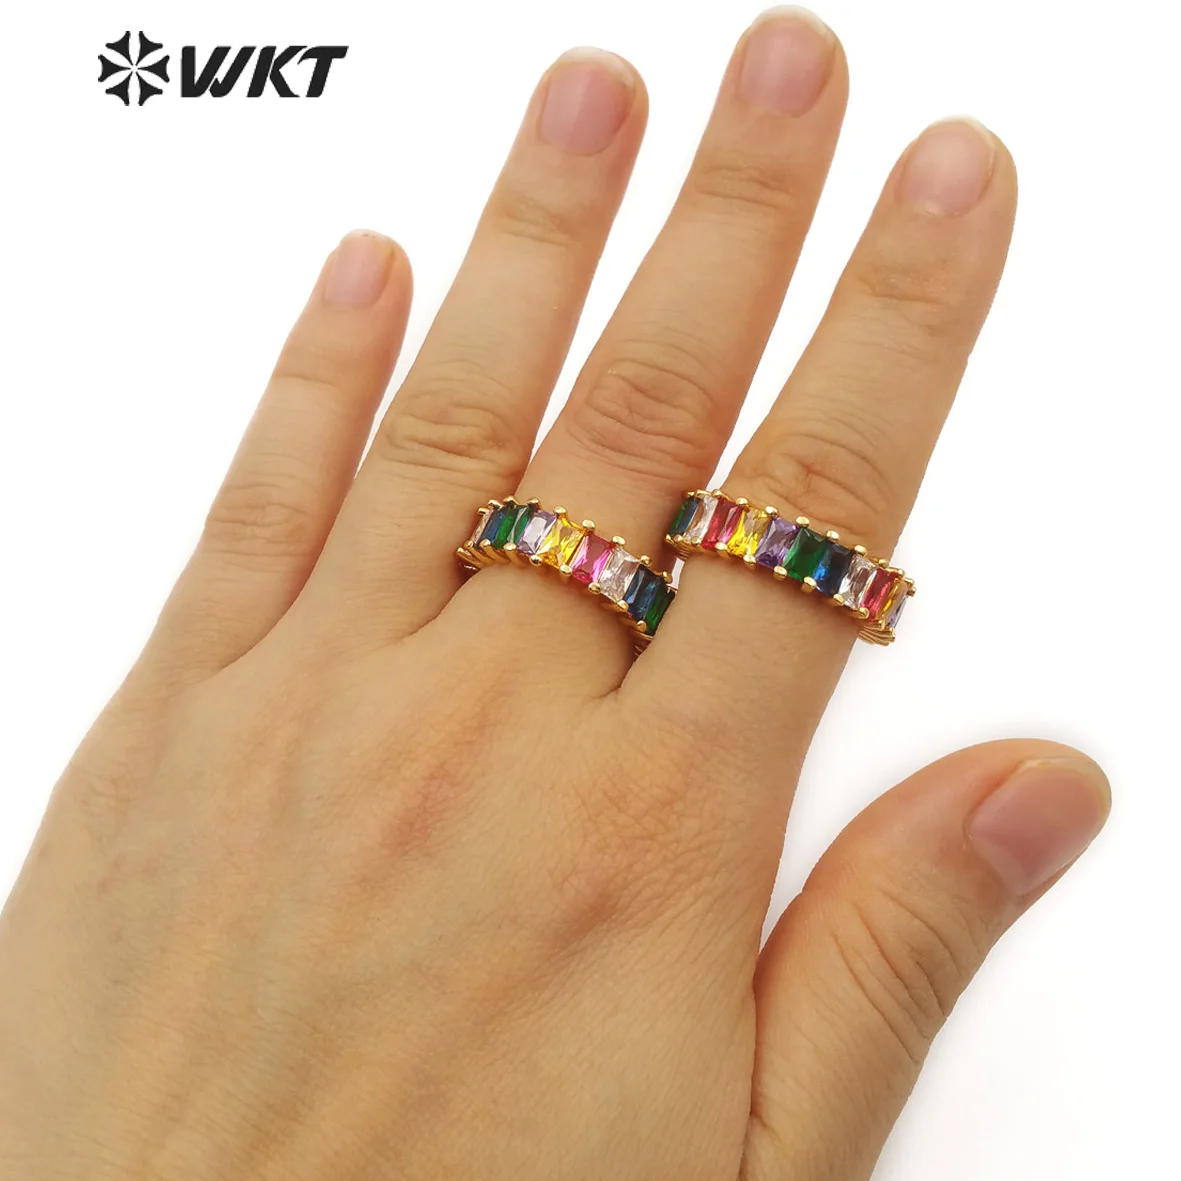 WT-MR007 кольцо с микропаве прямоугольной формы разноцветные камни-камни Шарм Золотое Кольцо женское ювелирное модное кольцо для нее